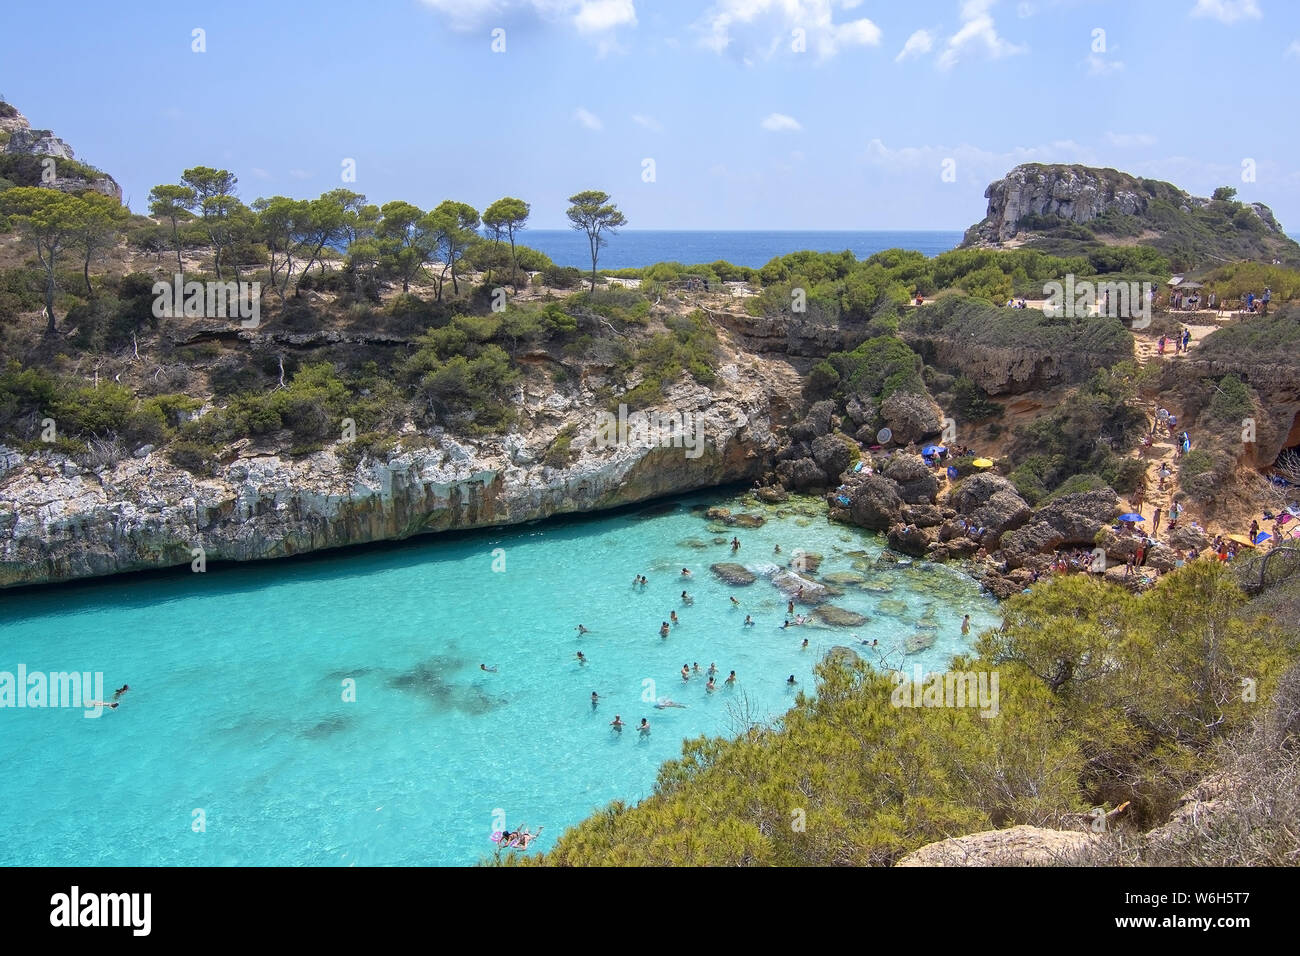 CALO DES MORO, Mallorca, España - Julio 27, 2019: muy pequeña bahía de aguas turquesas y acantilados escarpados en un día soleado en Julio 27, 2019 en Calo des Moro, Mallo Foto de stock